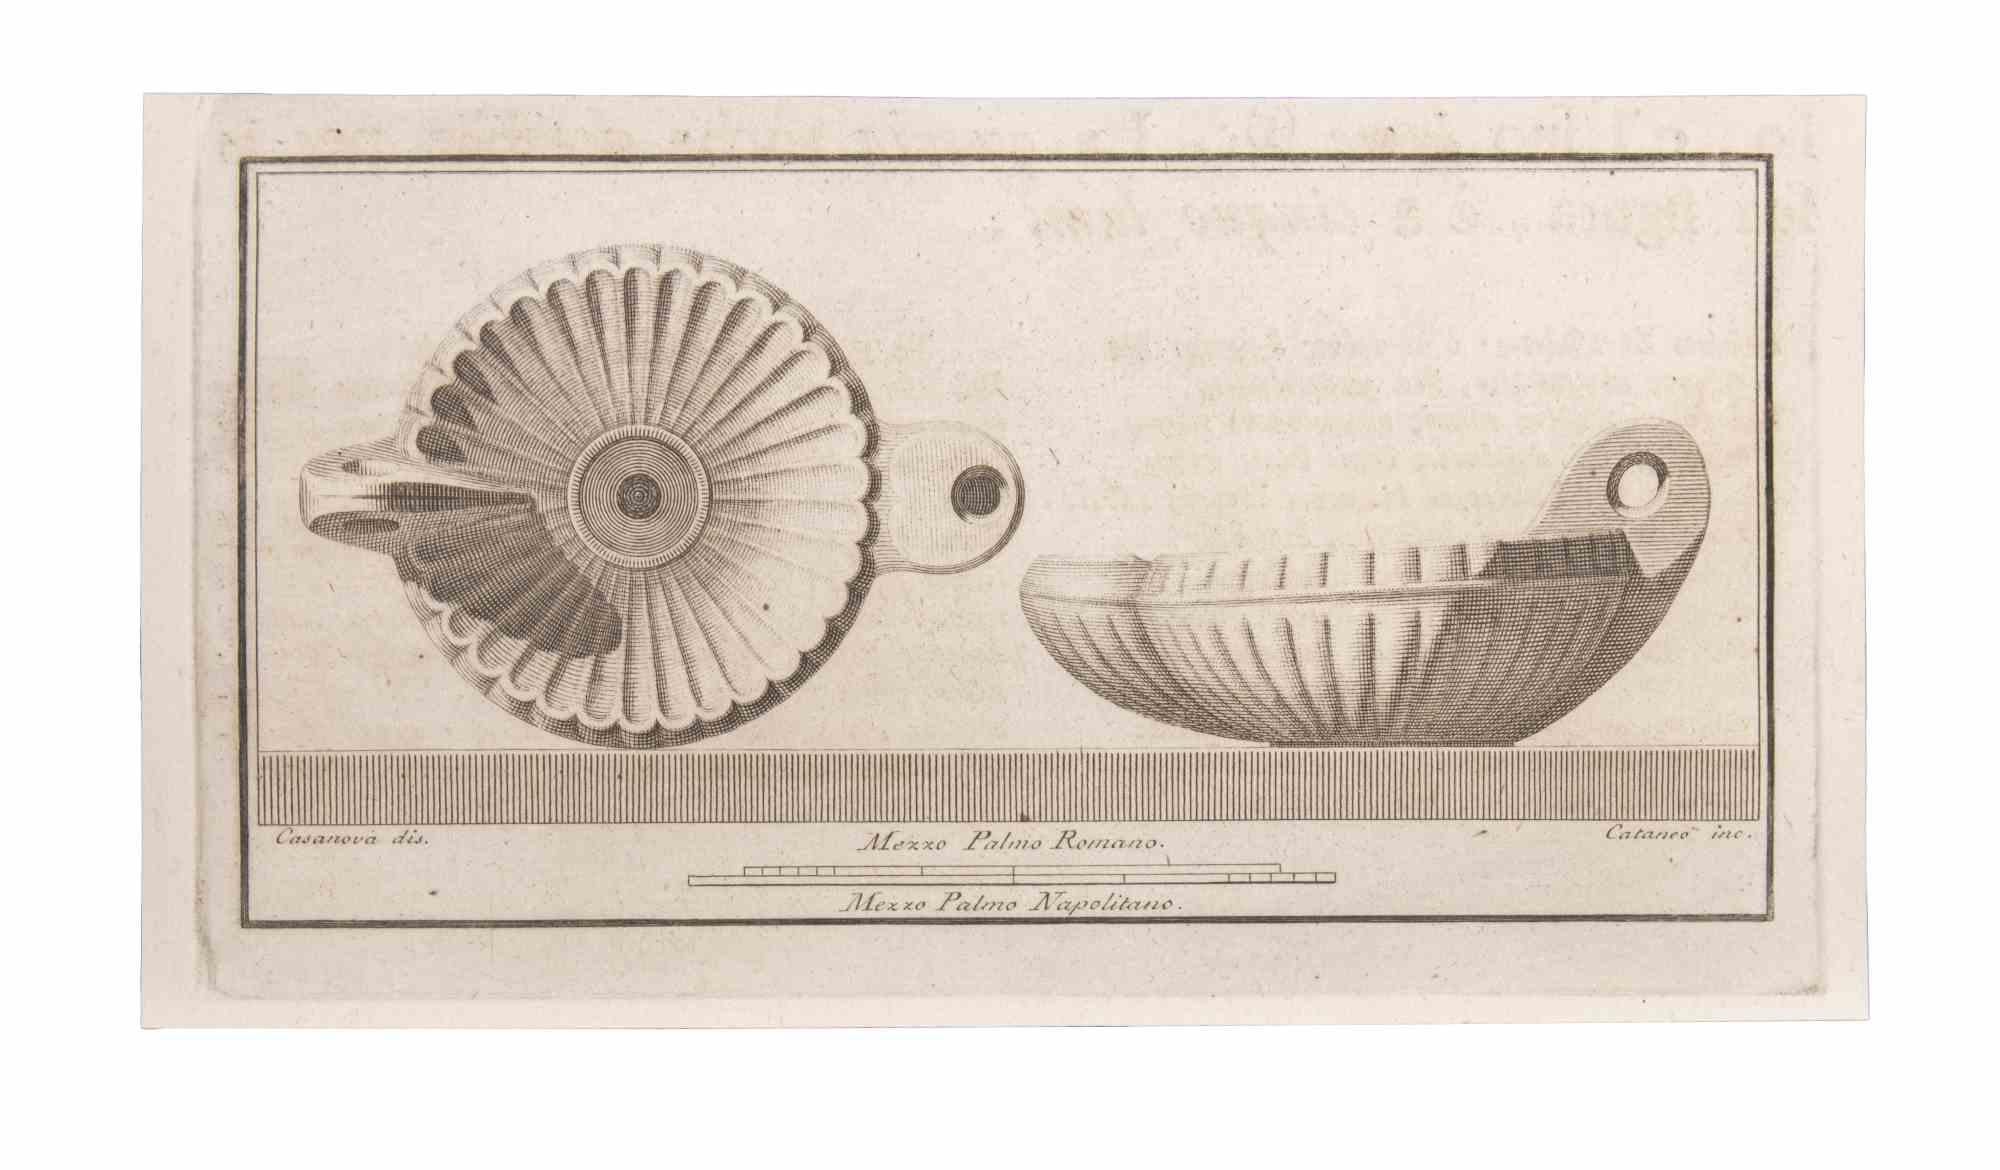 Lampe à huile est une eau-forte réalisée par Aniello Cataneo (1732-1805).

La gravure appartient à la suite d'estampes "Antiquités d'Herculanum exposées" (titre original : "Le Antichità di Ercolano Esposte"), un volume de huit gravures des